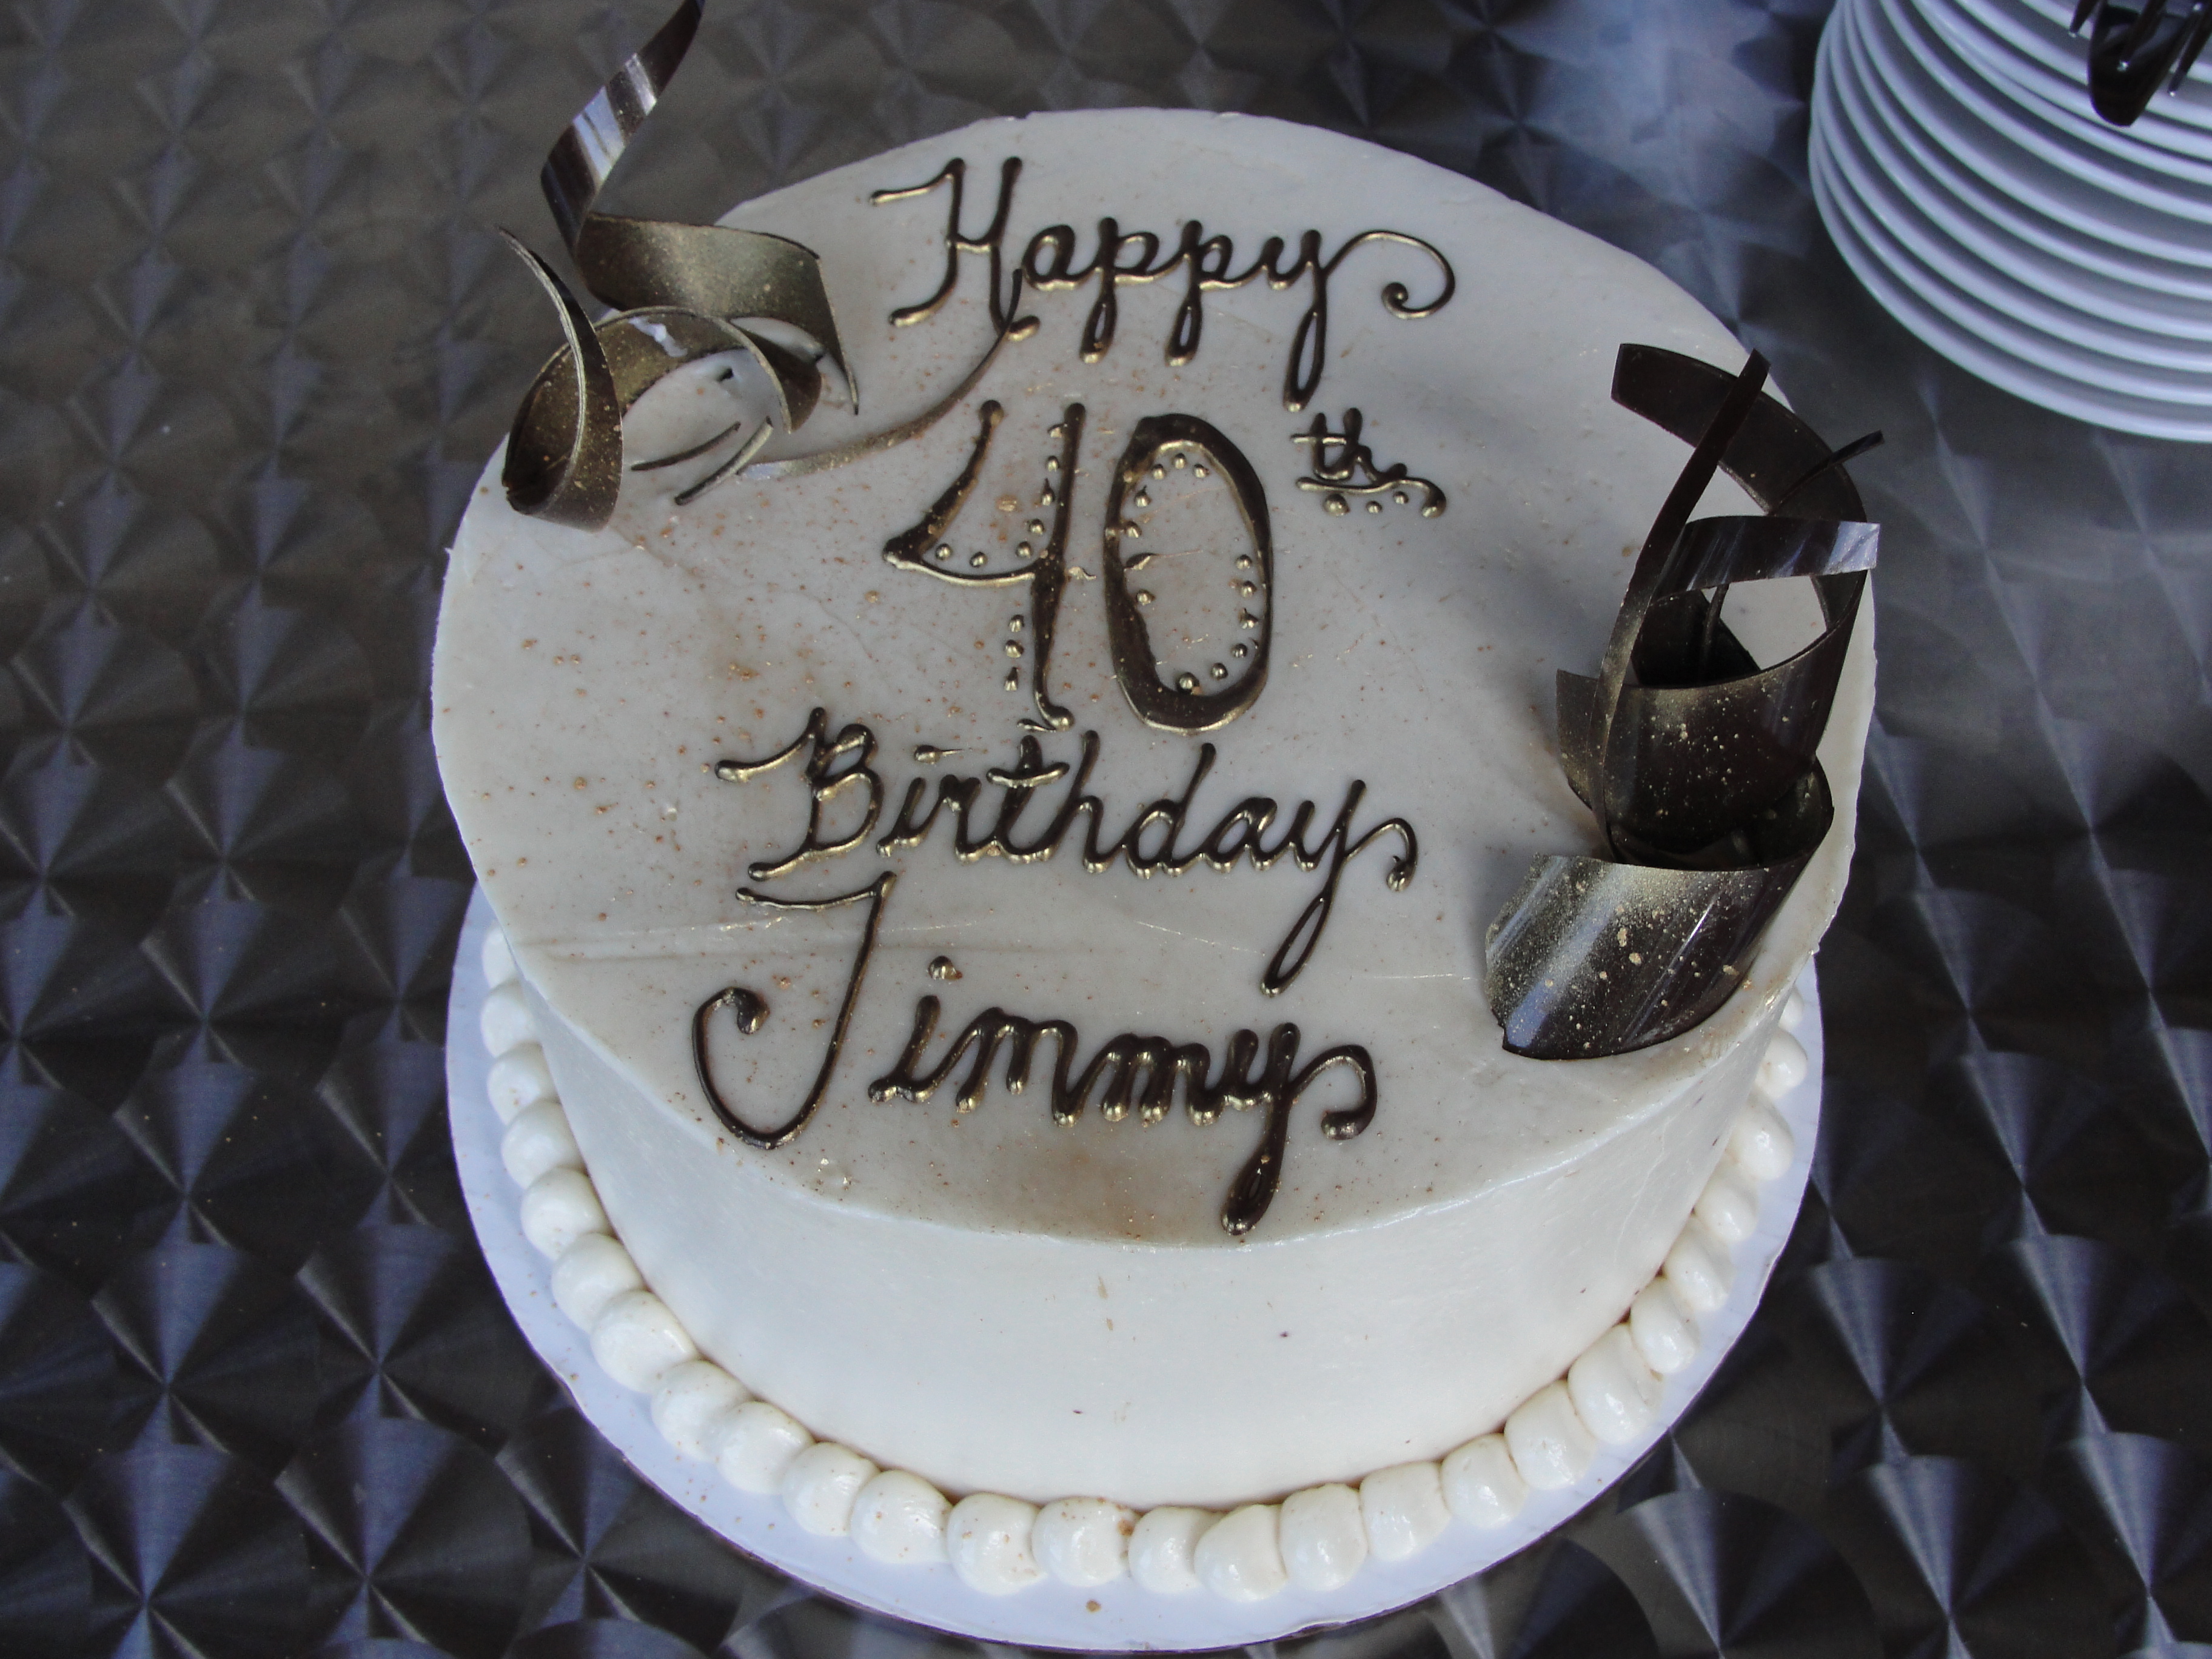 Happy Birthday Jimmy Cake Image - DSC03951